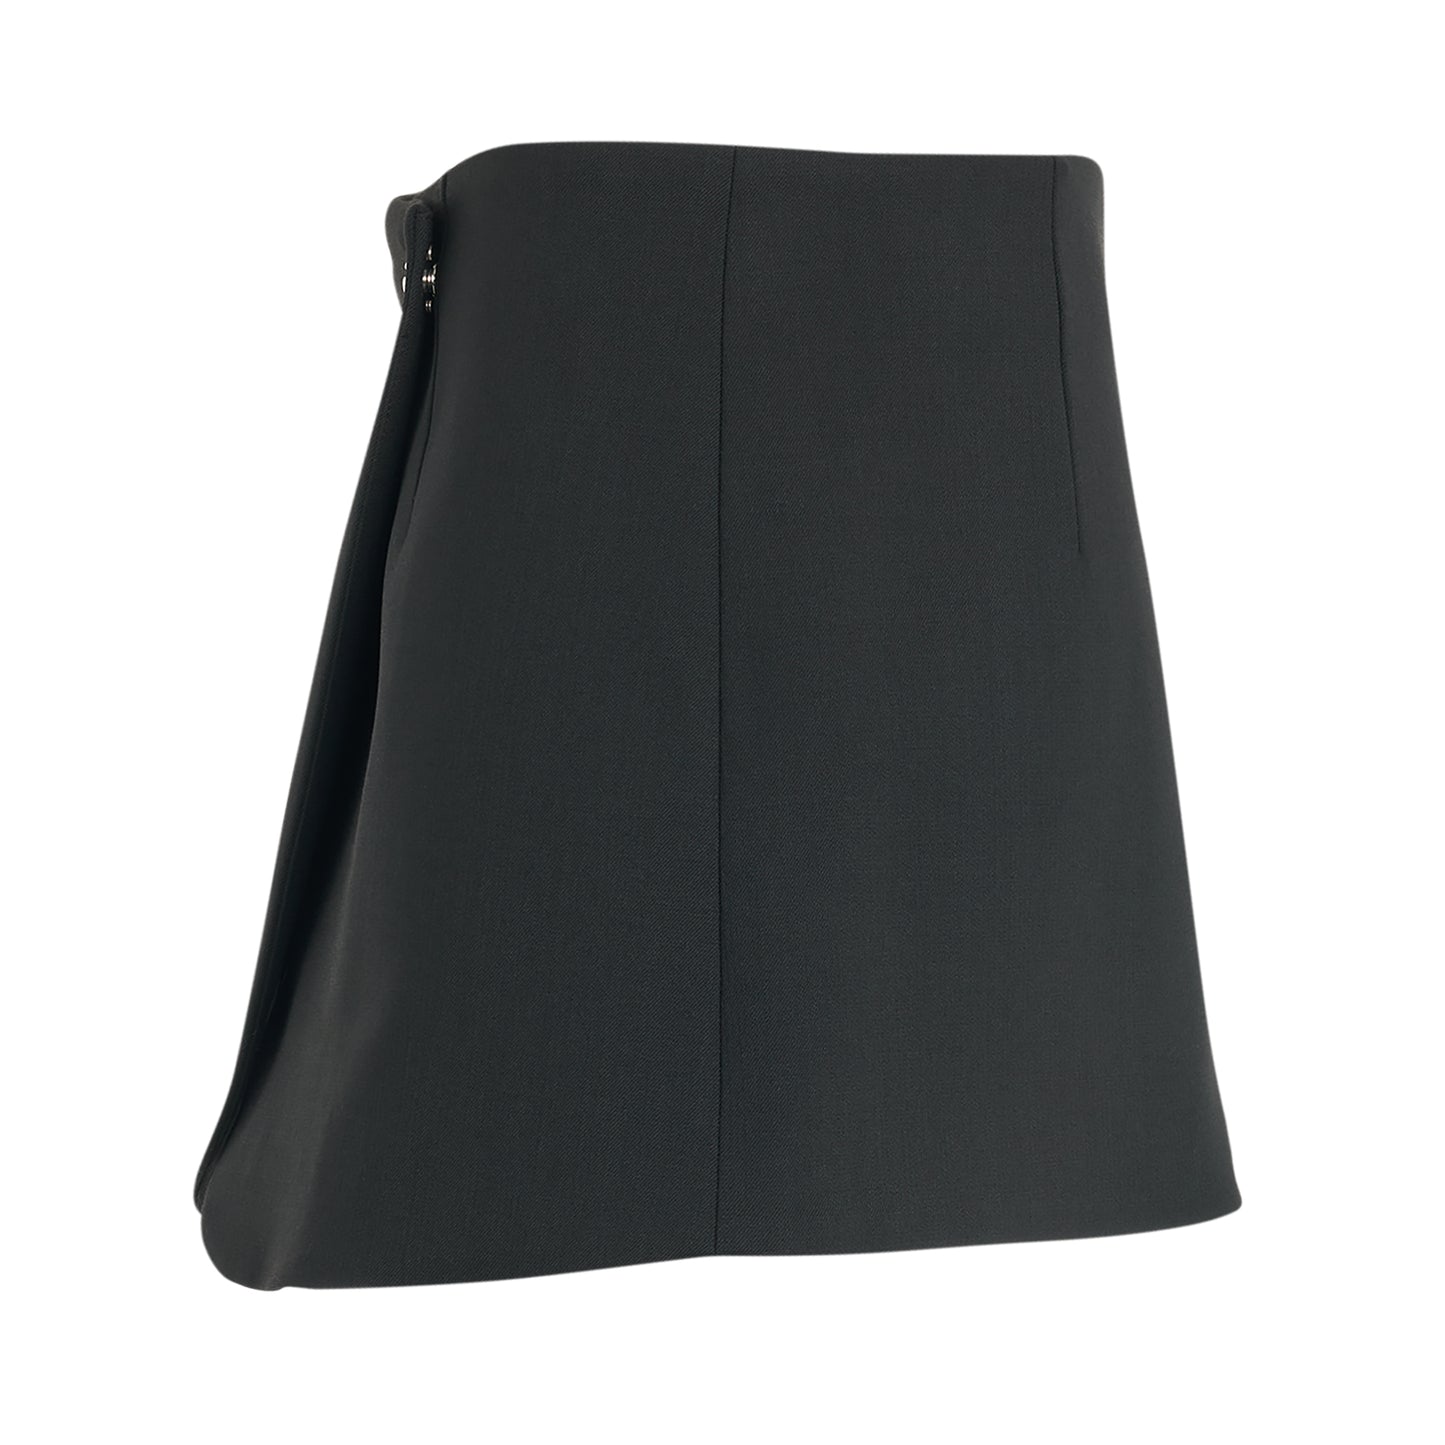 Tailored Mini Skirt in Black